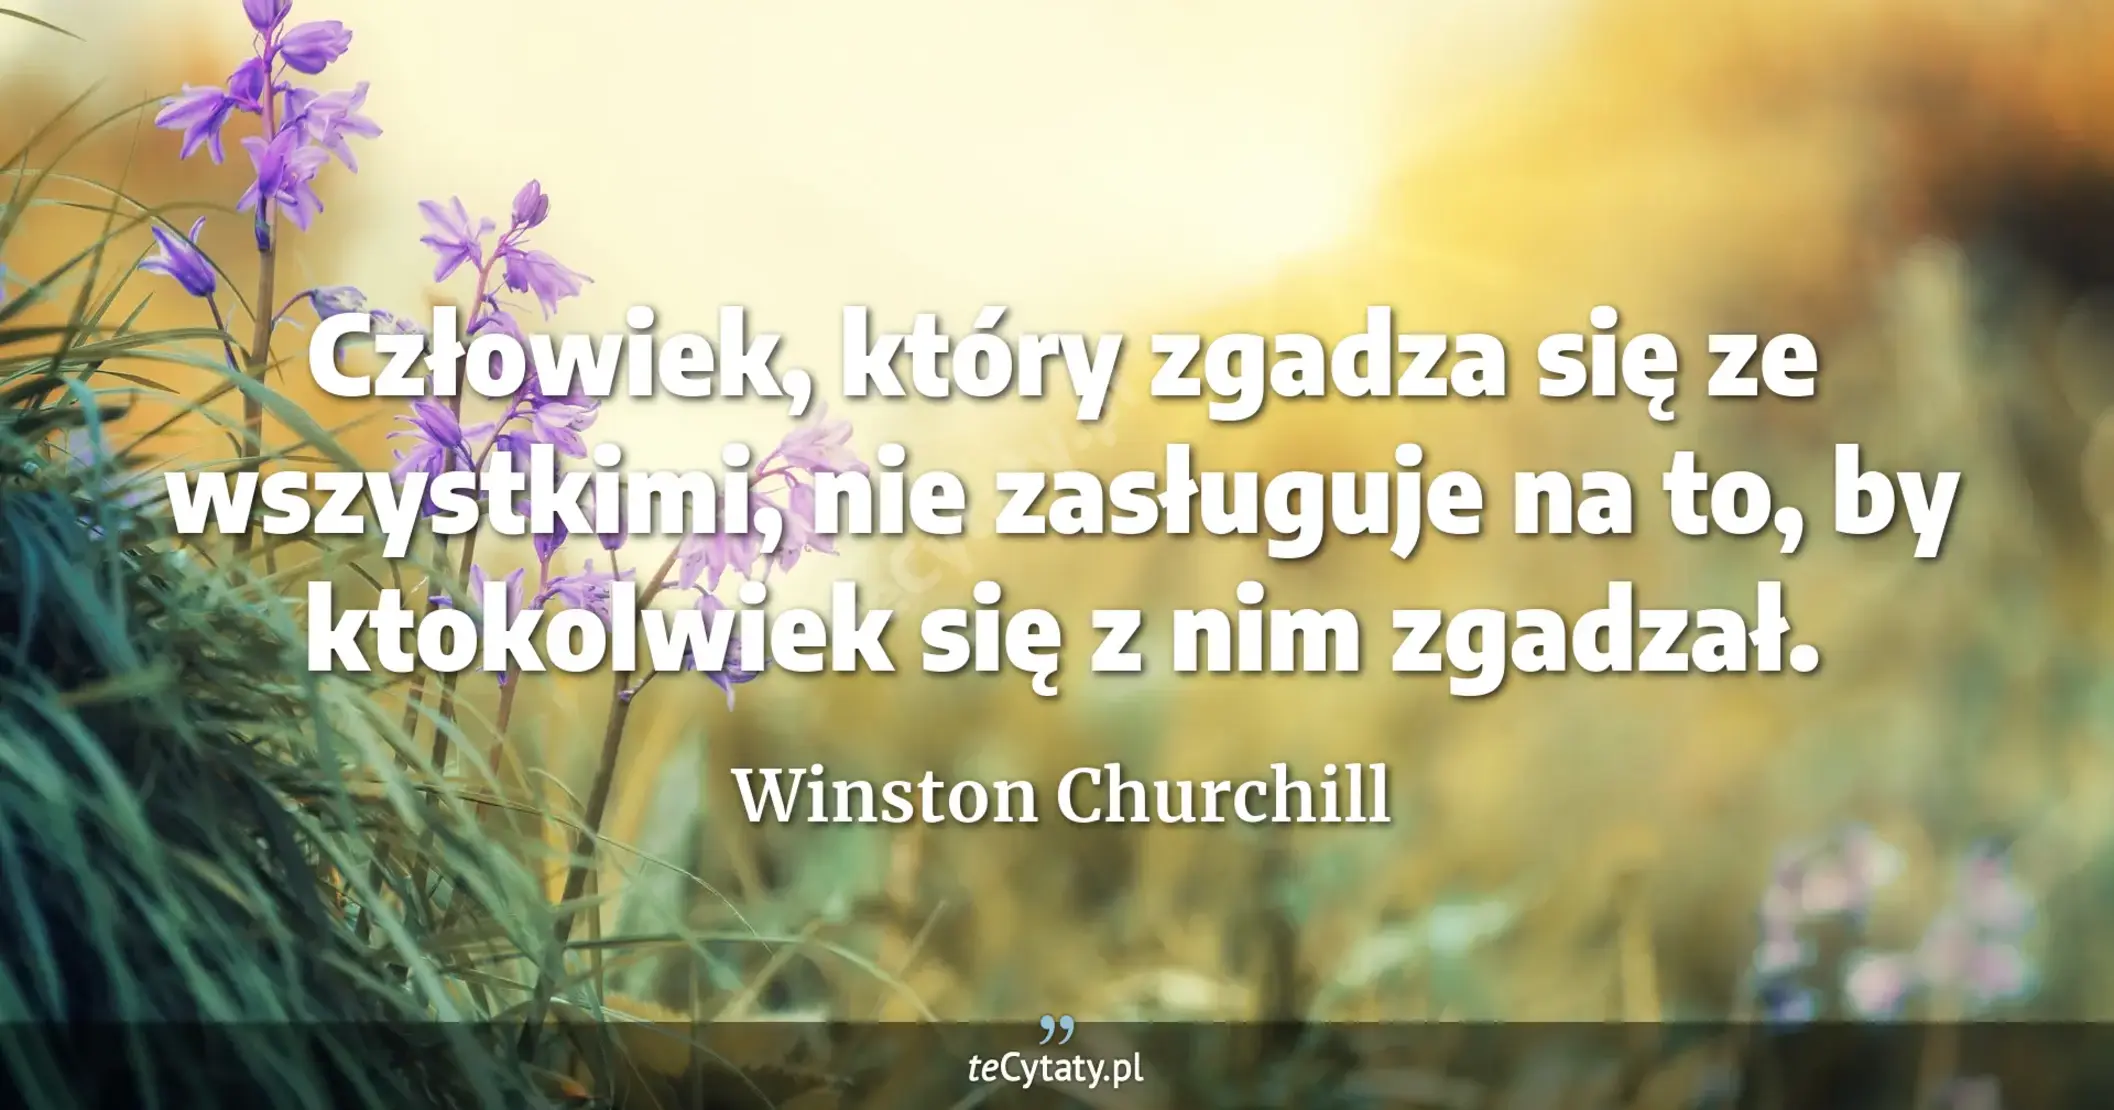 Człowiek, który zgadza się ze wszystkimi, nie zasługuje na to, by ktokolwiek się z nim zgadzał. - Winston Churchill